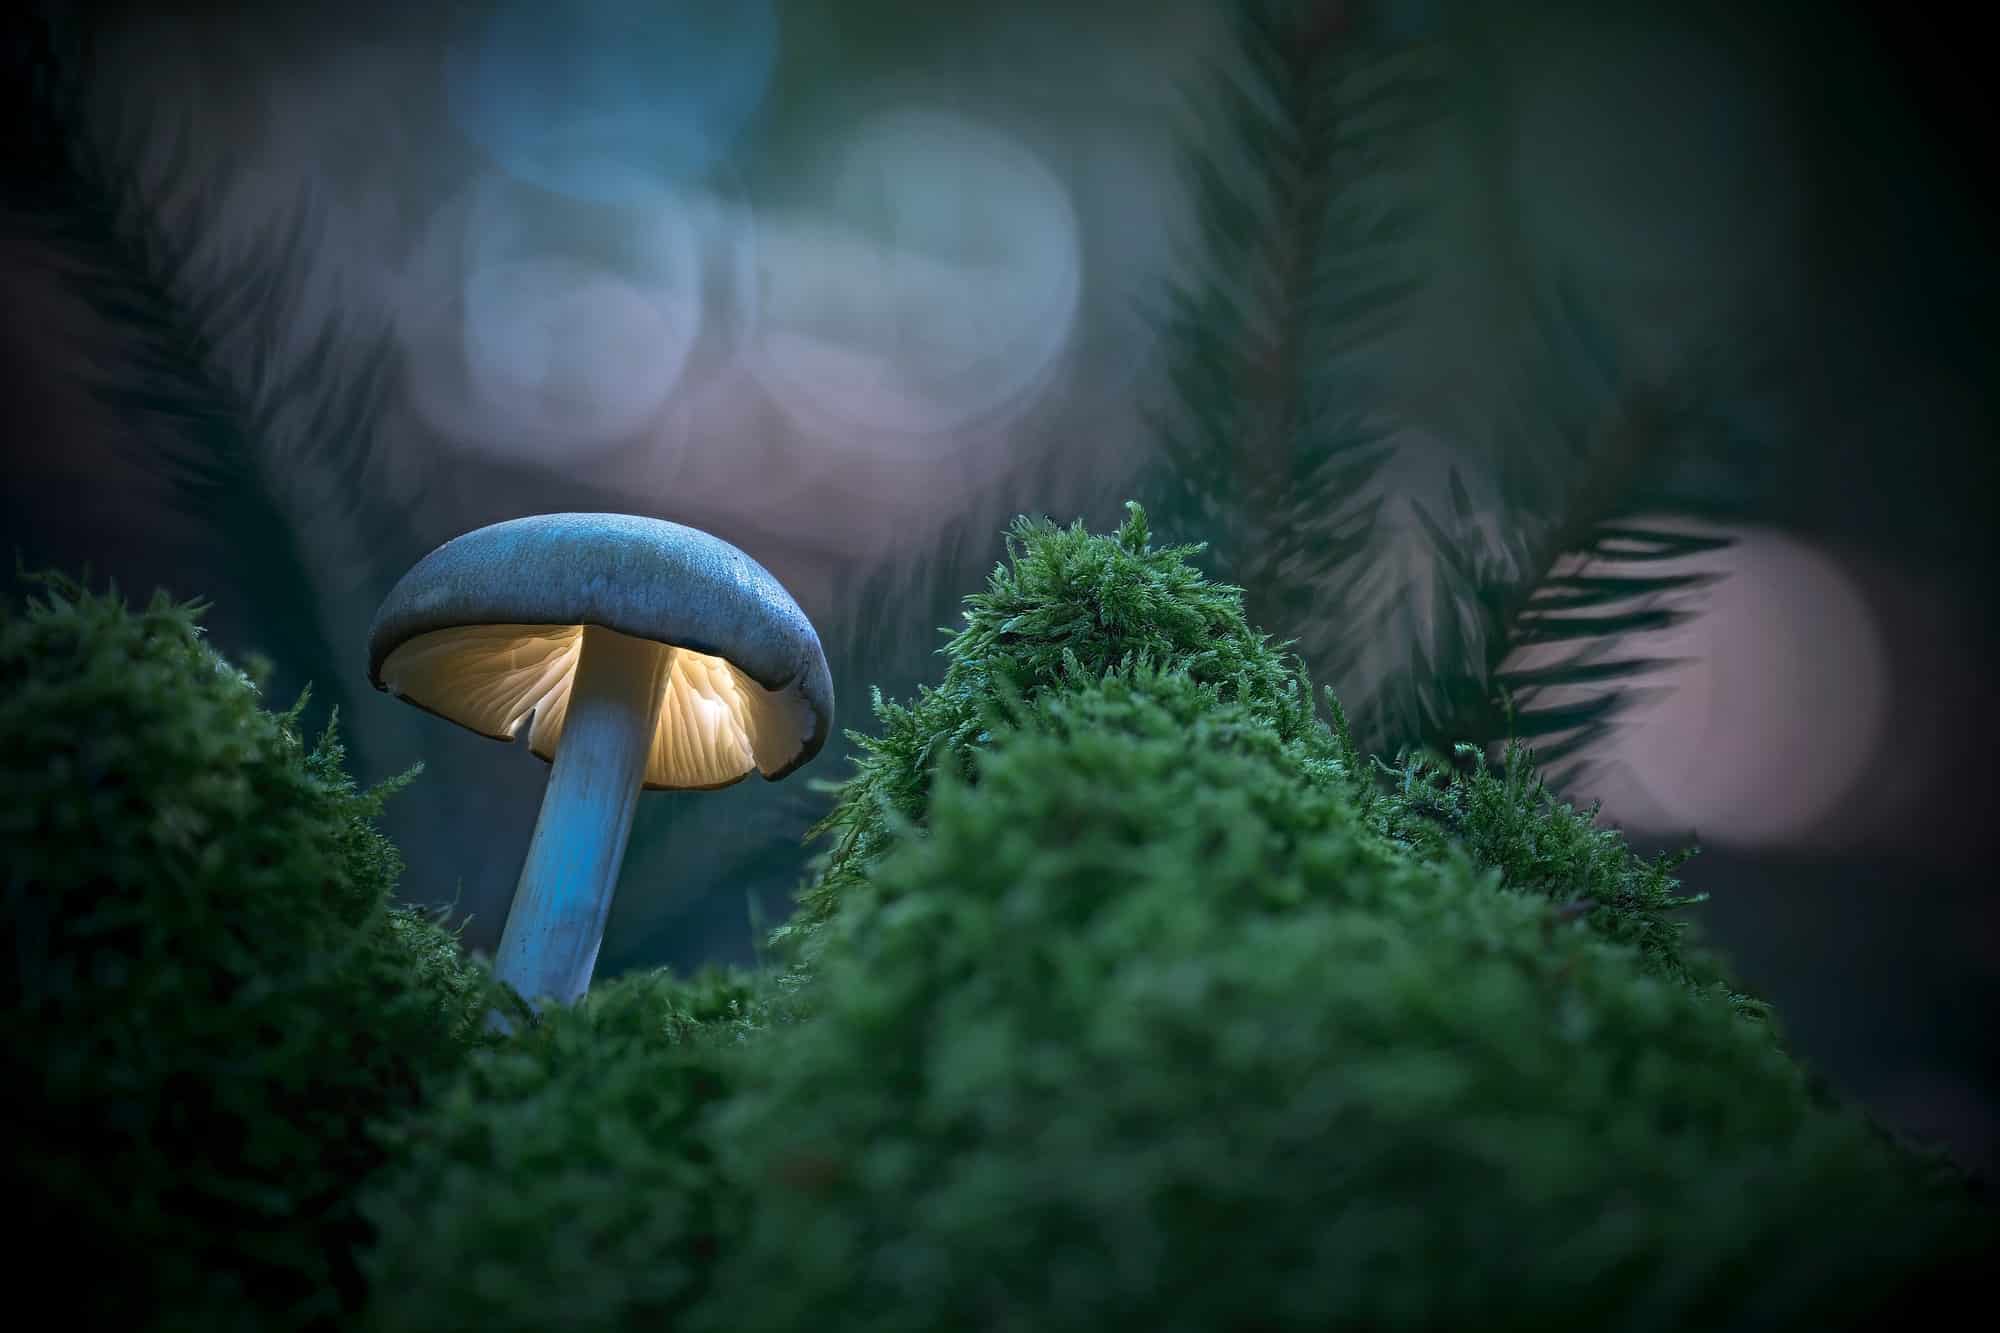 Champignon, monde fantastique lumineux dans la forêt du soir